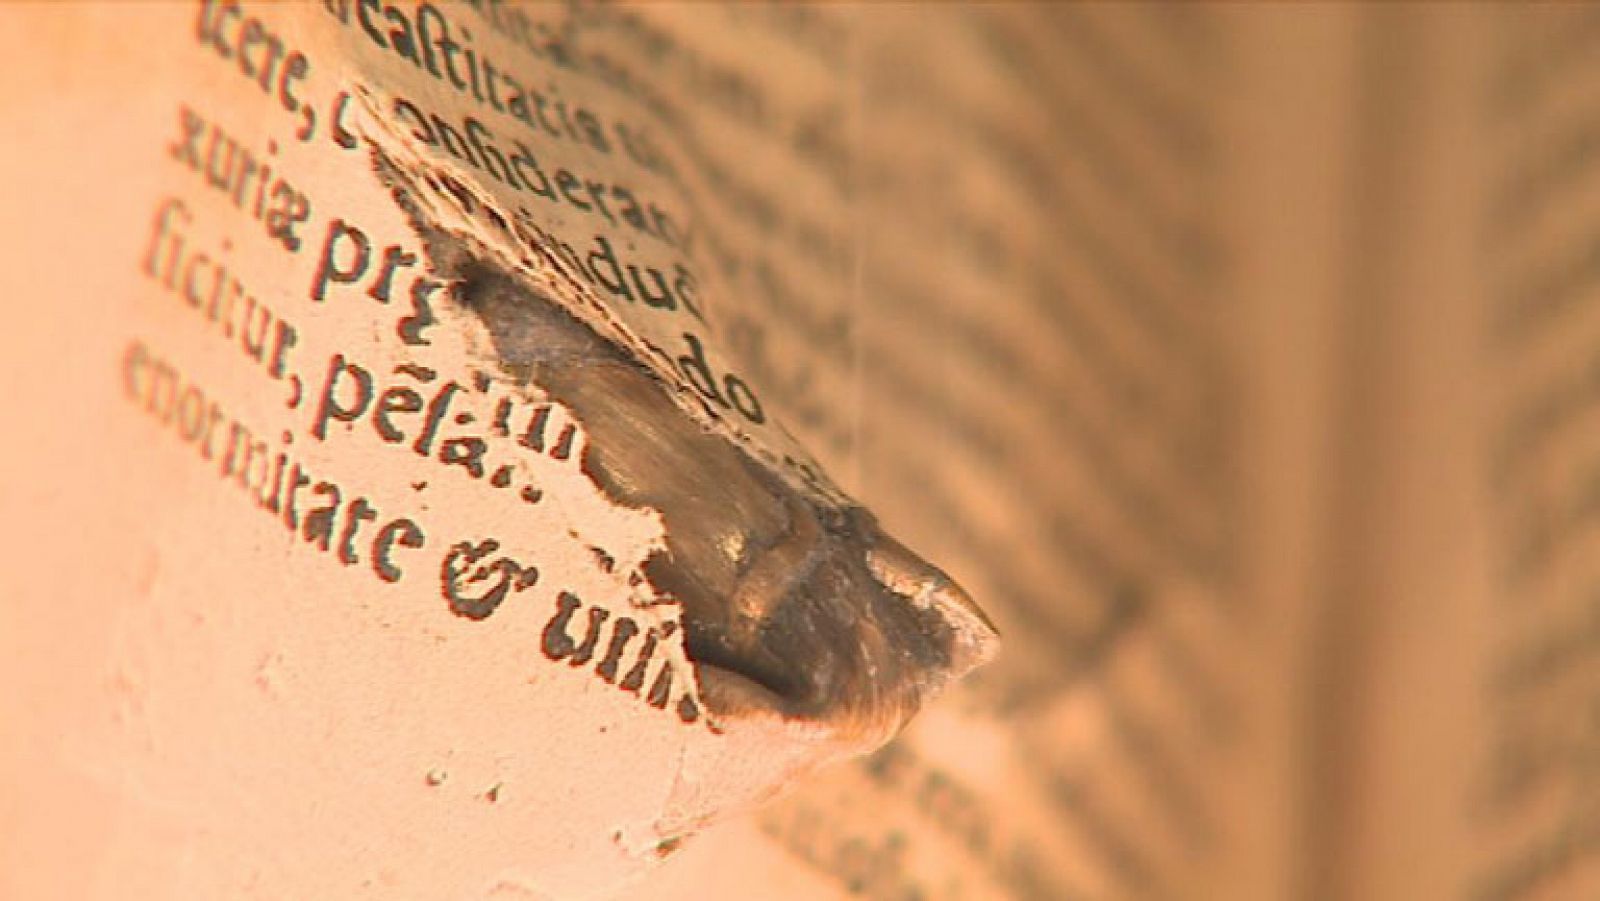 Una exposición recupera los objetos olvidados en libros de más de 4 siglos